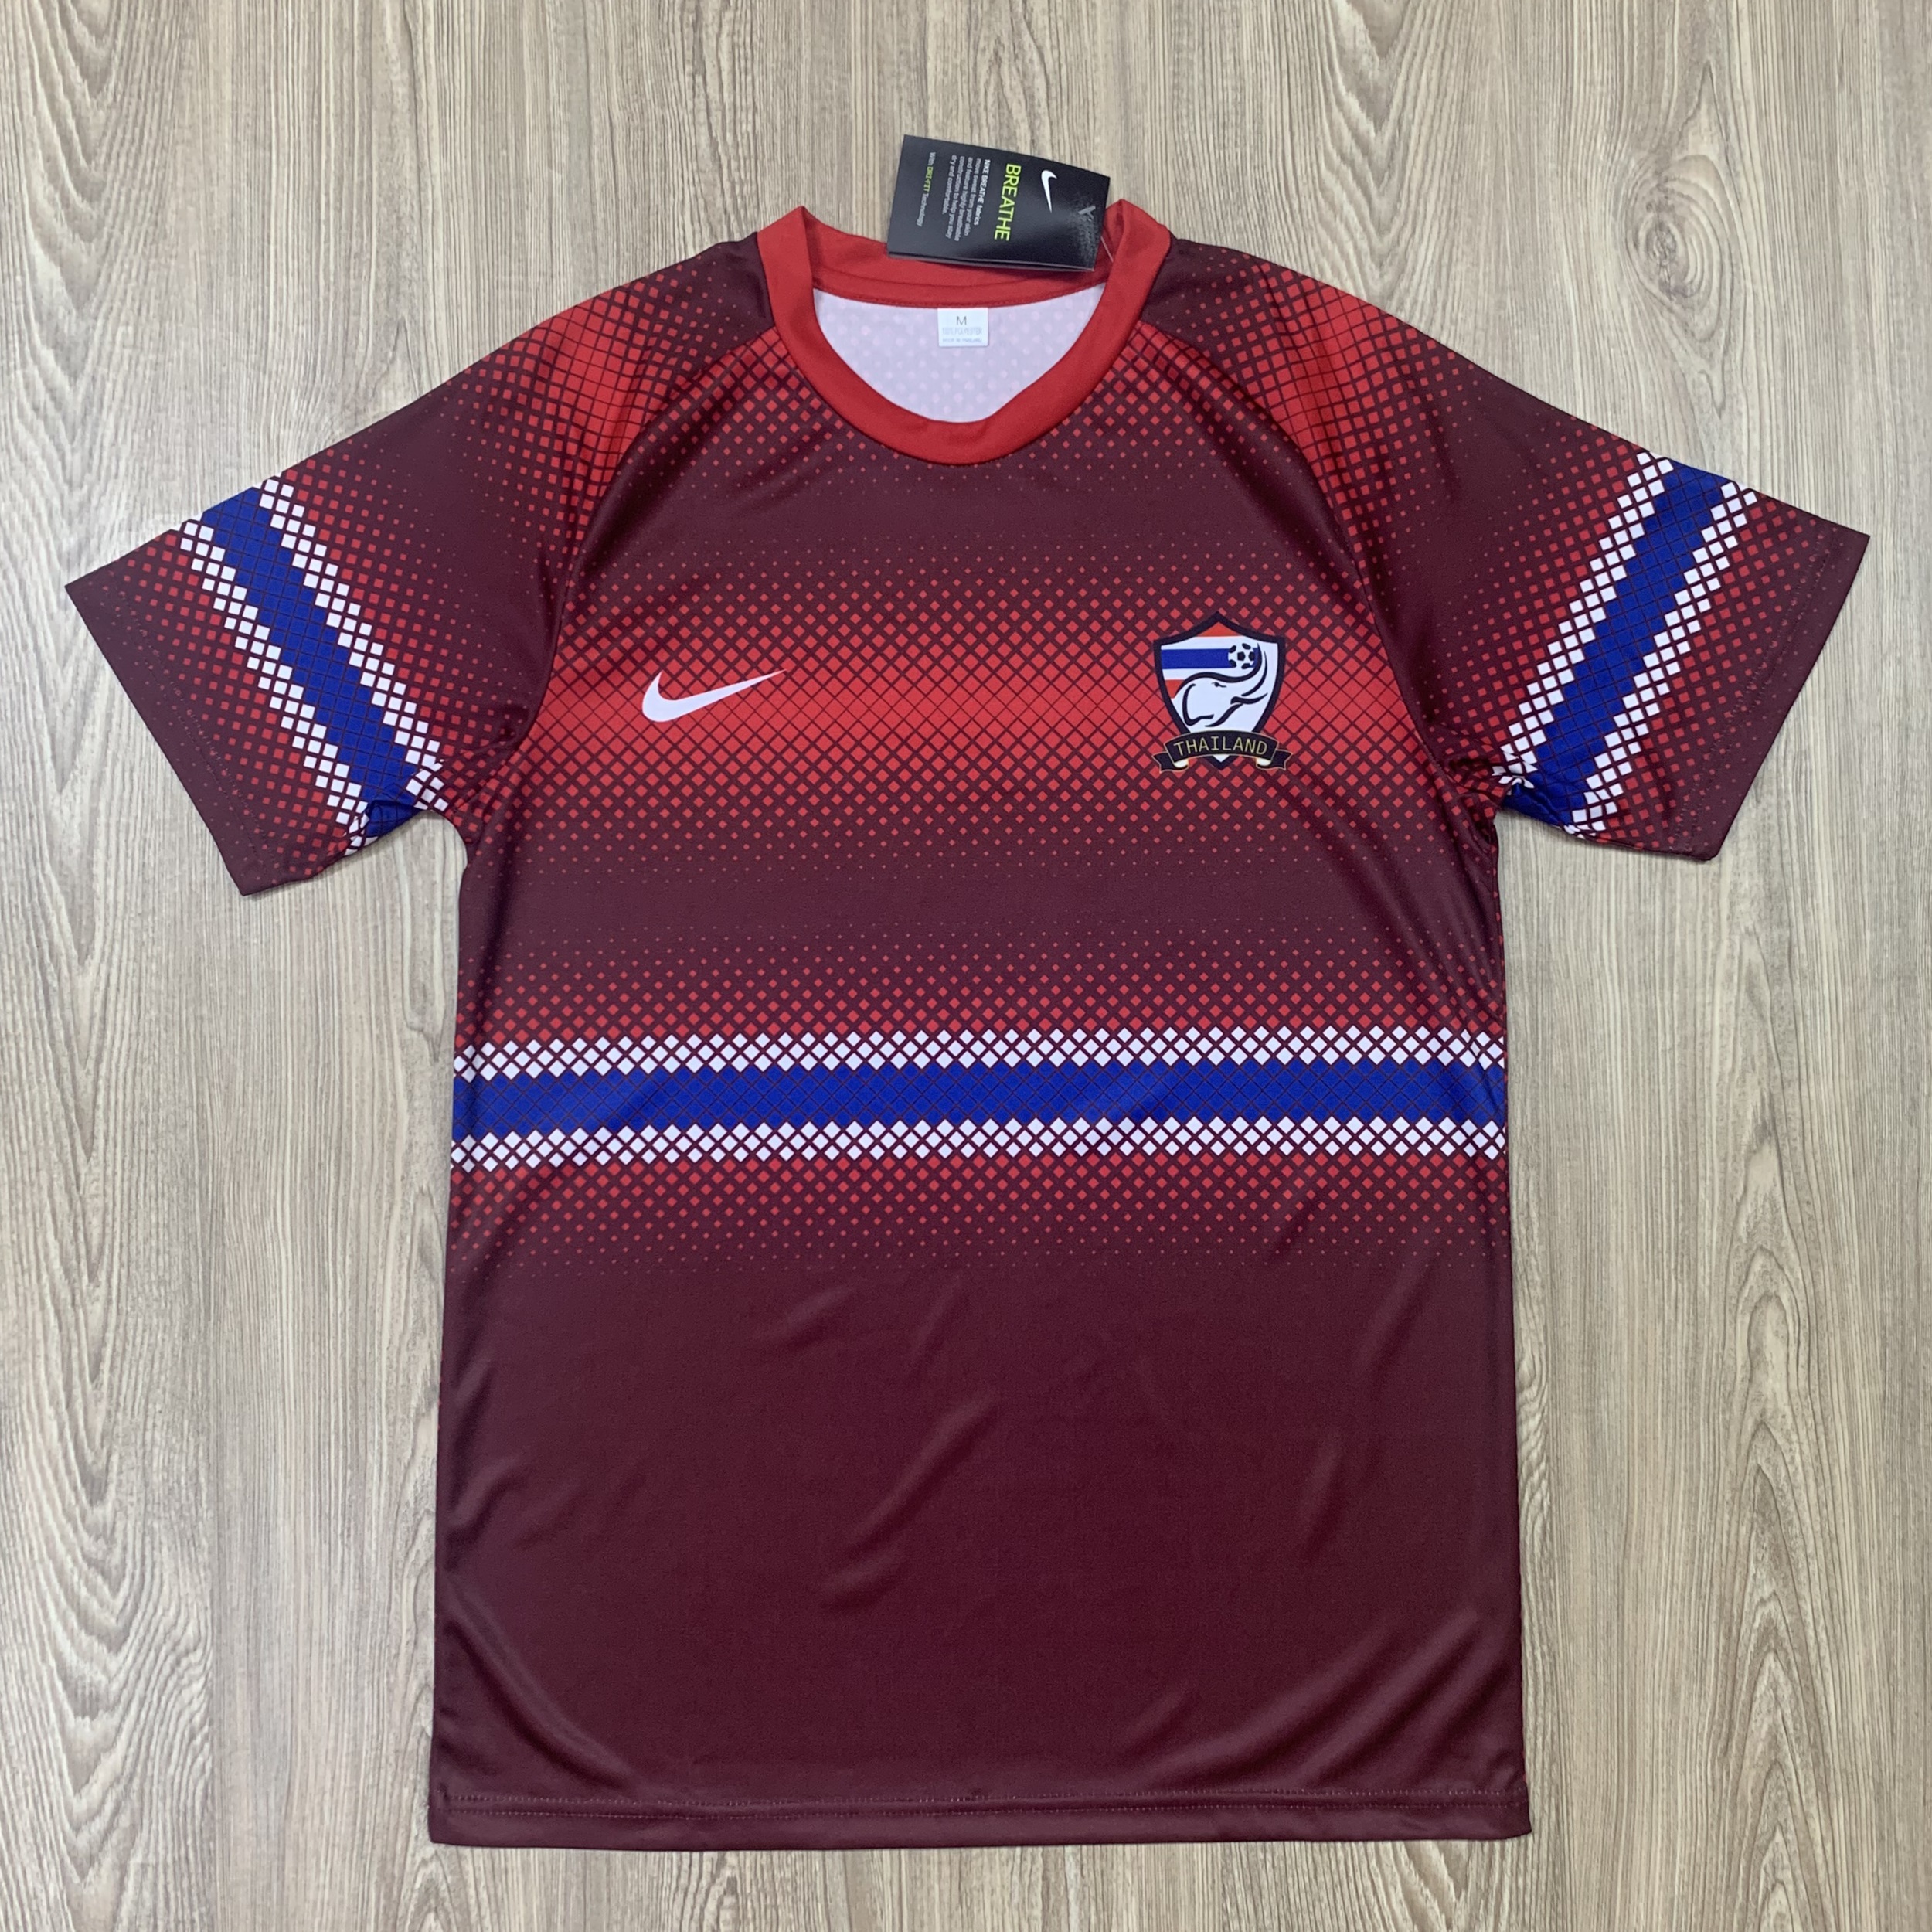 เสื้อสโมสรฟุตบอล ทีม Thailand ปี21/22 เสื้อบอล เสื้อกีฬา ผ้ายืด ใส่สบาย รับประกันคุณภาพ ผ้าเกรดA